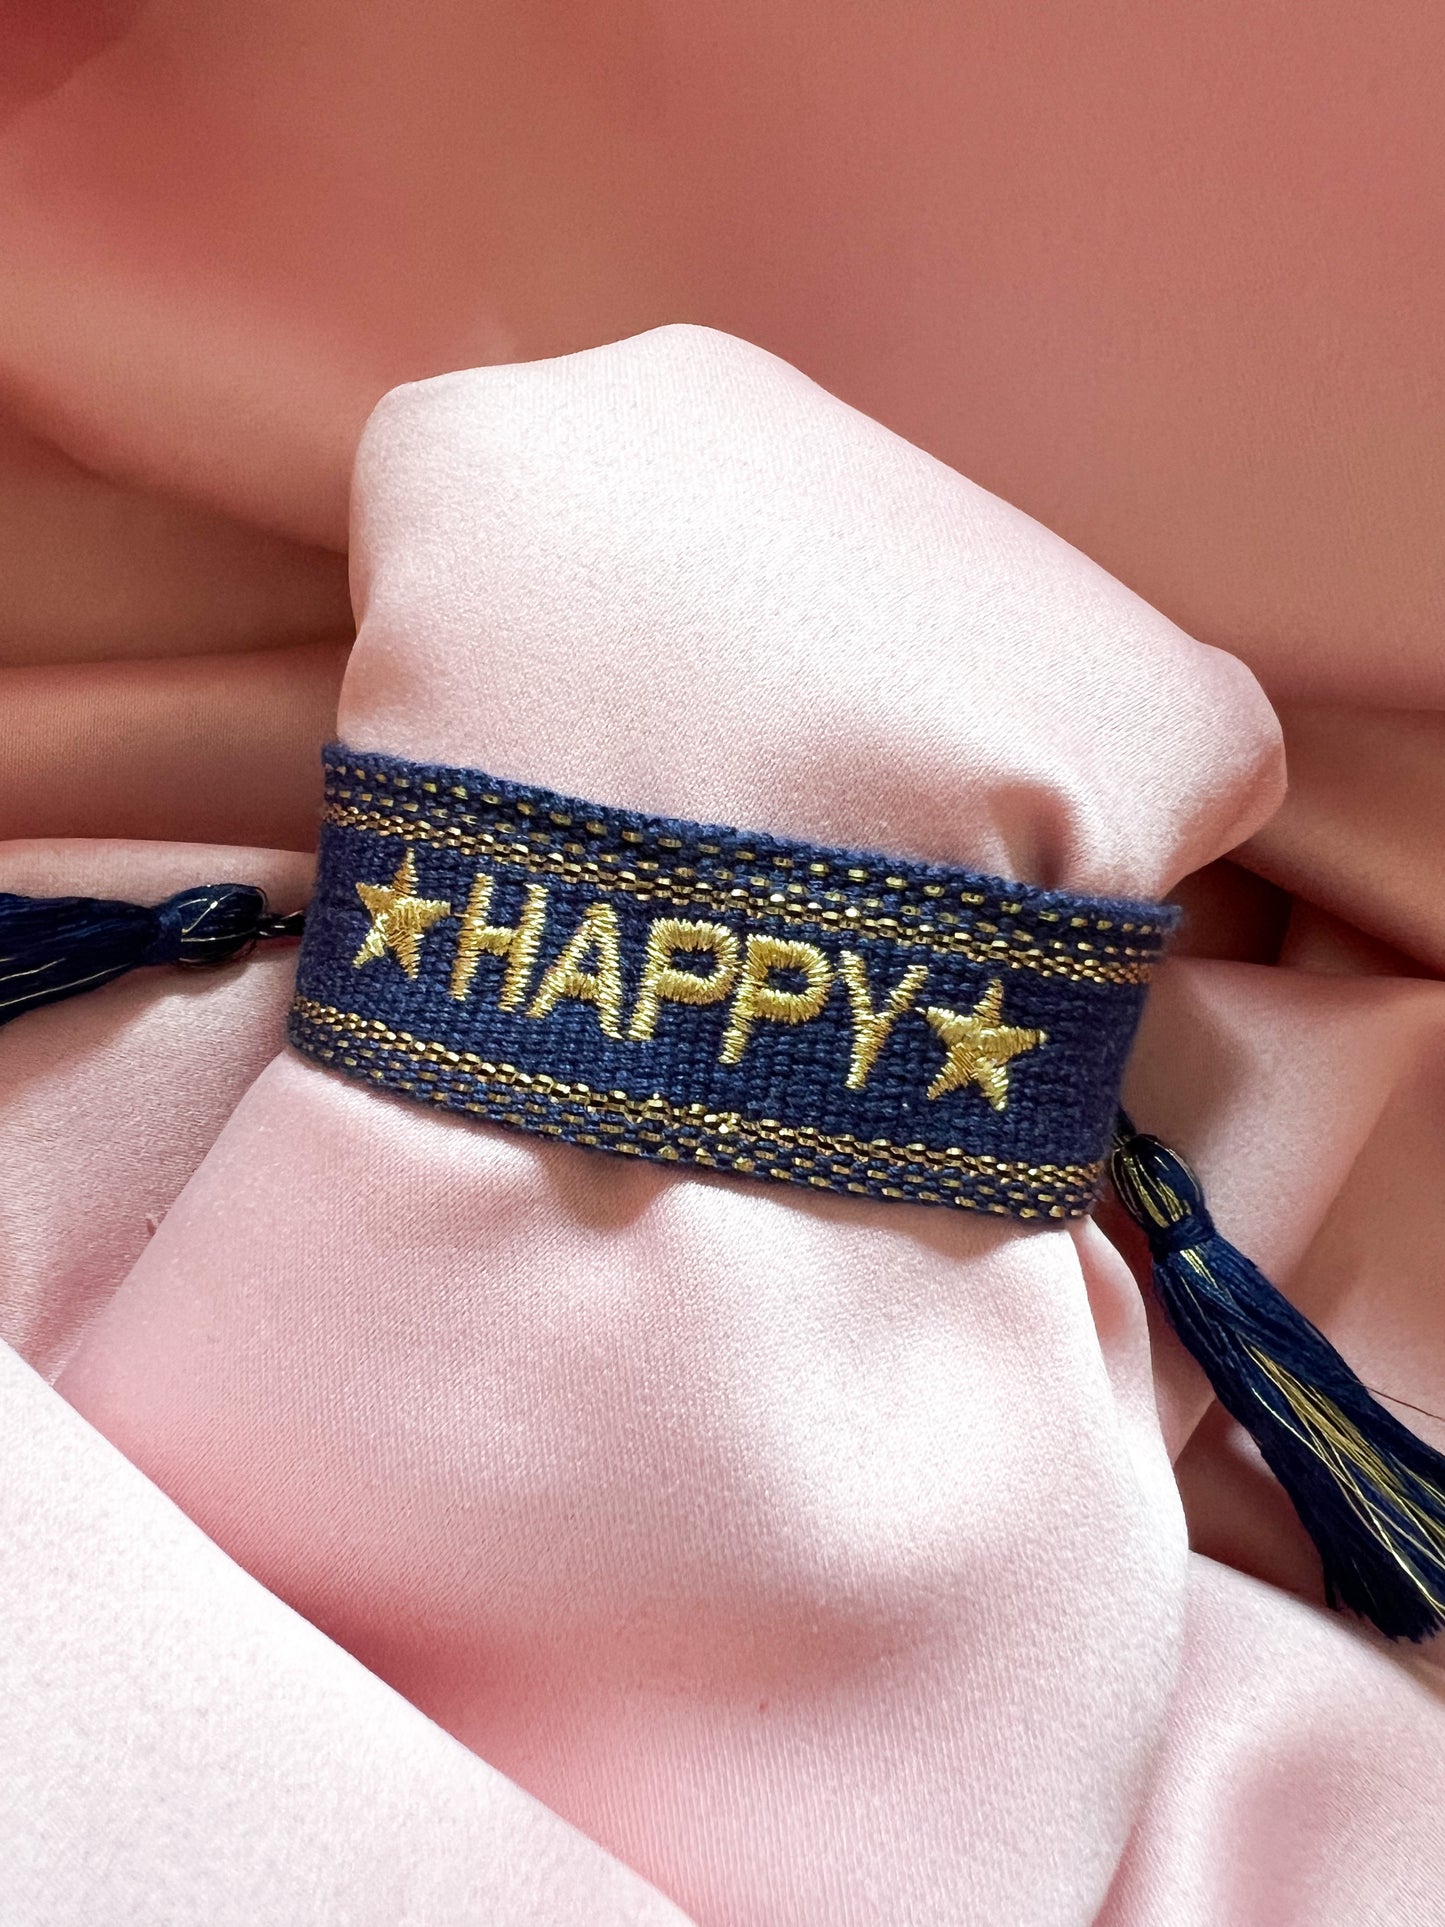 Bracelet « Happy »